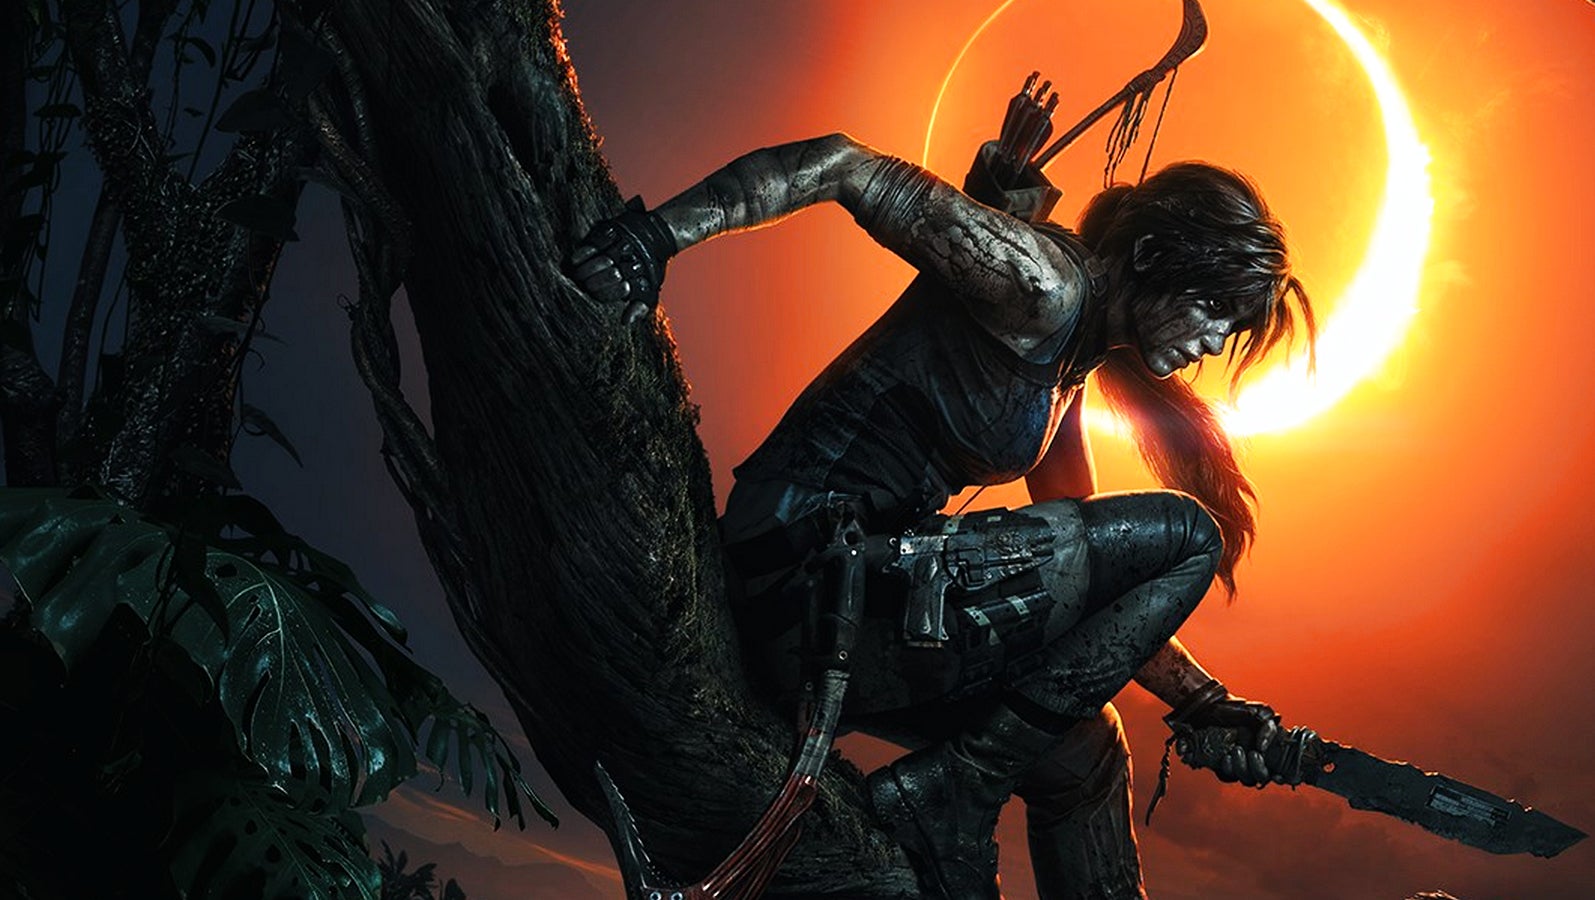 Bilder zu Tomb Raider: Epic verschenkt die komplette Reboot-Trilogie - aber nur noch bis 6. Januar!